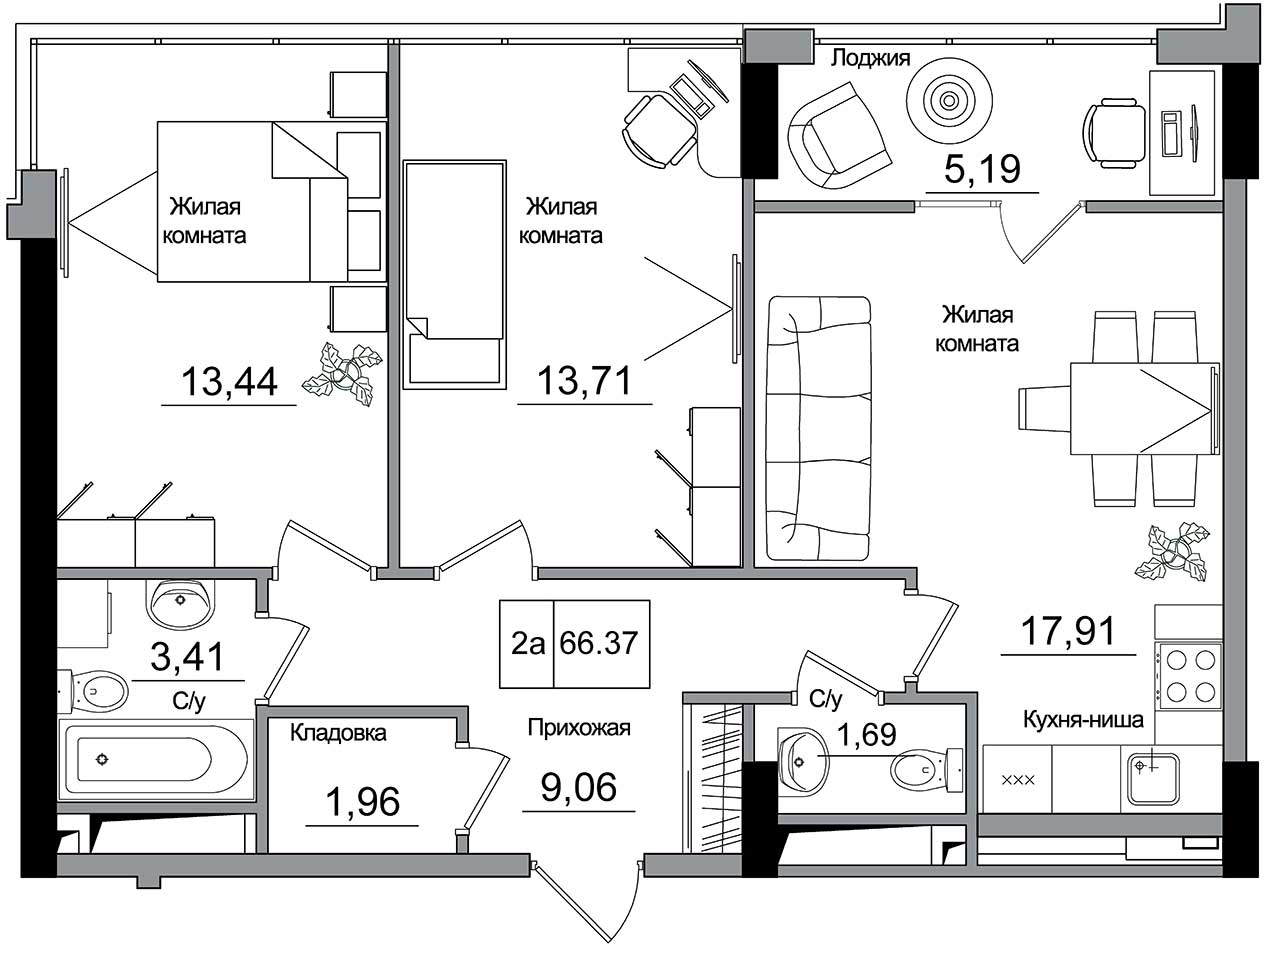 Планування 2-к квартира площею 66.37м2, AB-16-12/00006.